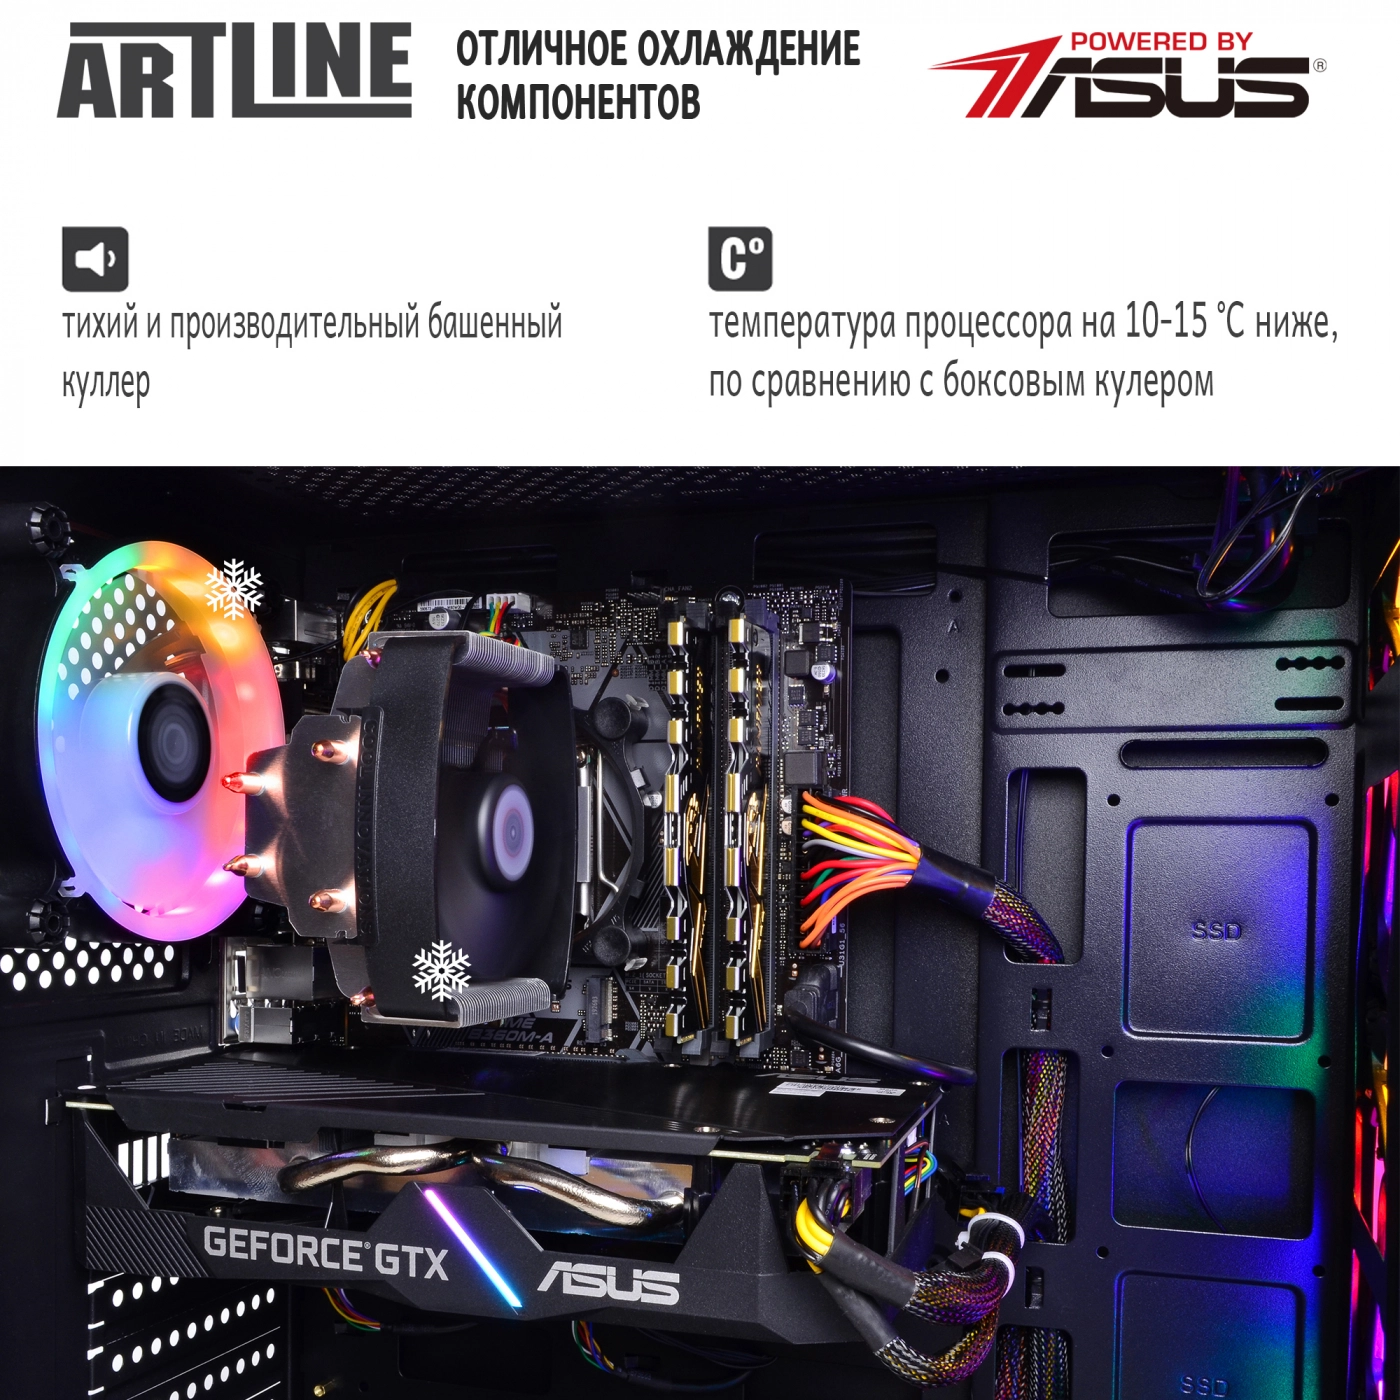 Купить Компьютер ARTLINE Gaming X39v41 - фото 7